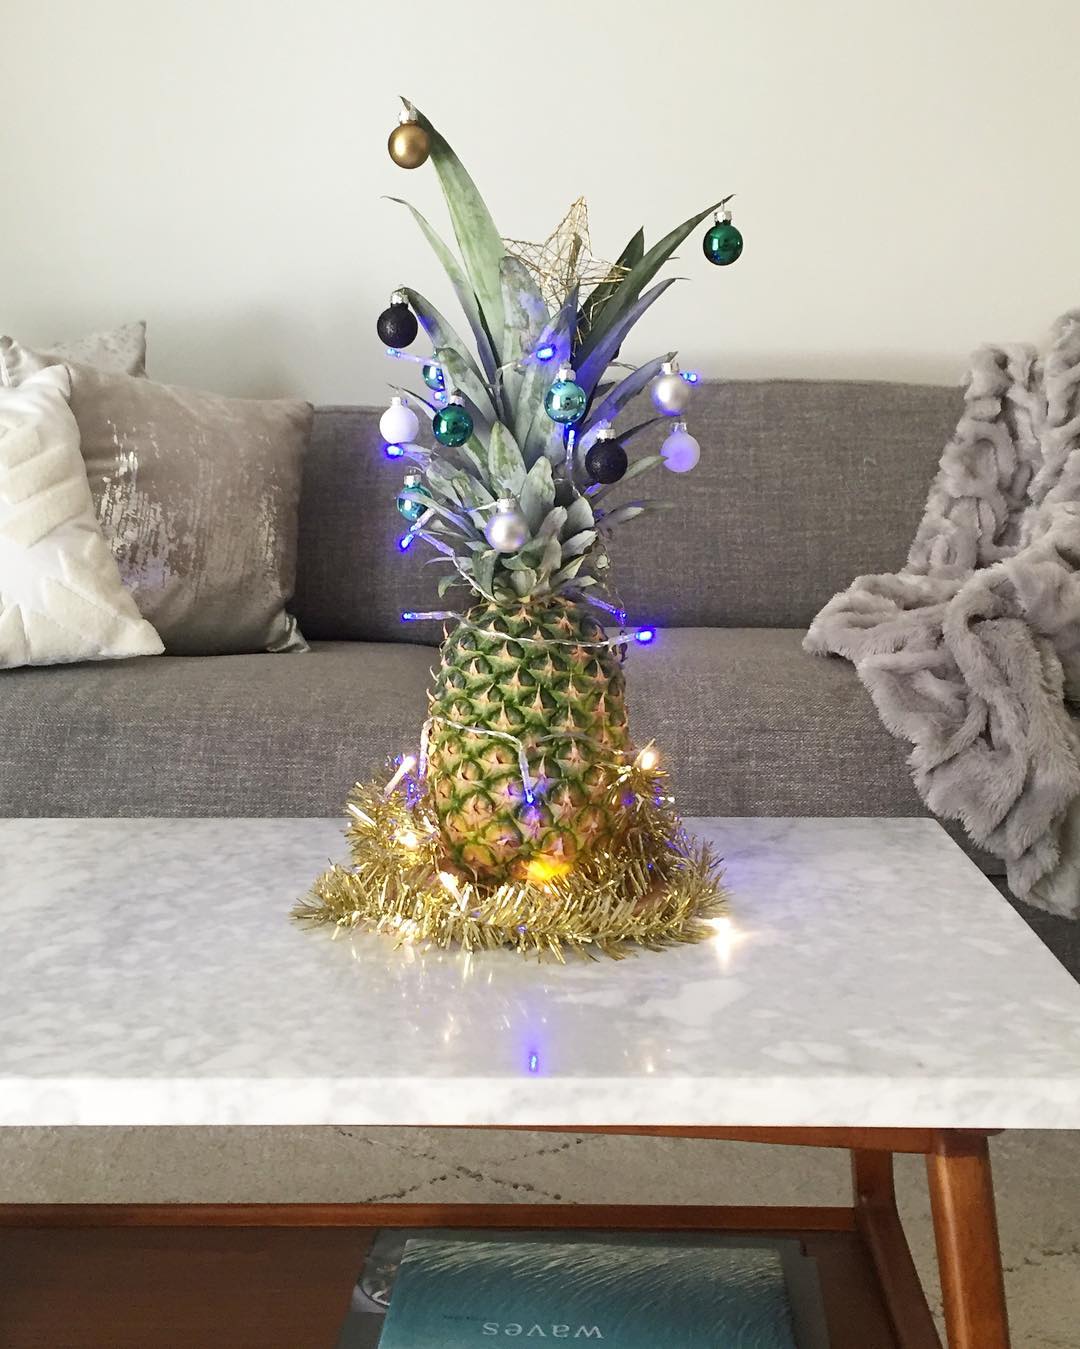 Η νέα τάση στα χριστουγεννιάτικα δέντρα είναι οι ανανάδες